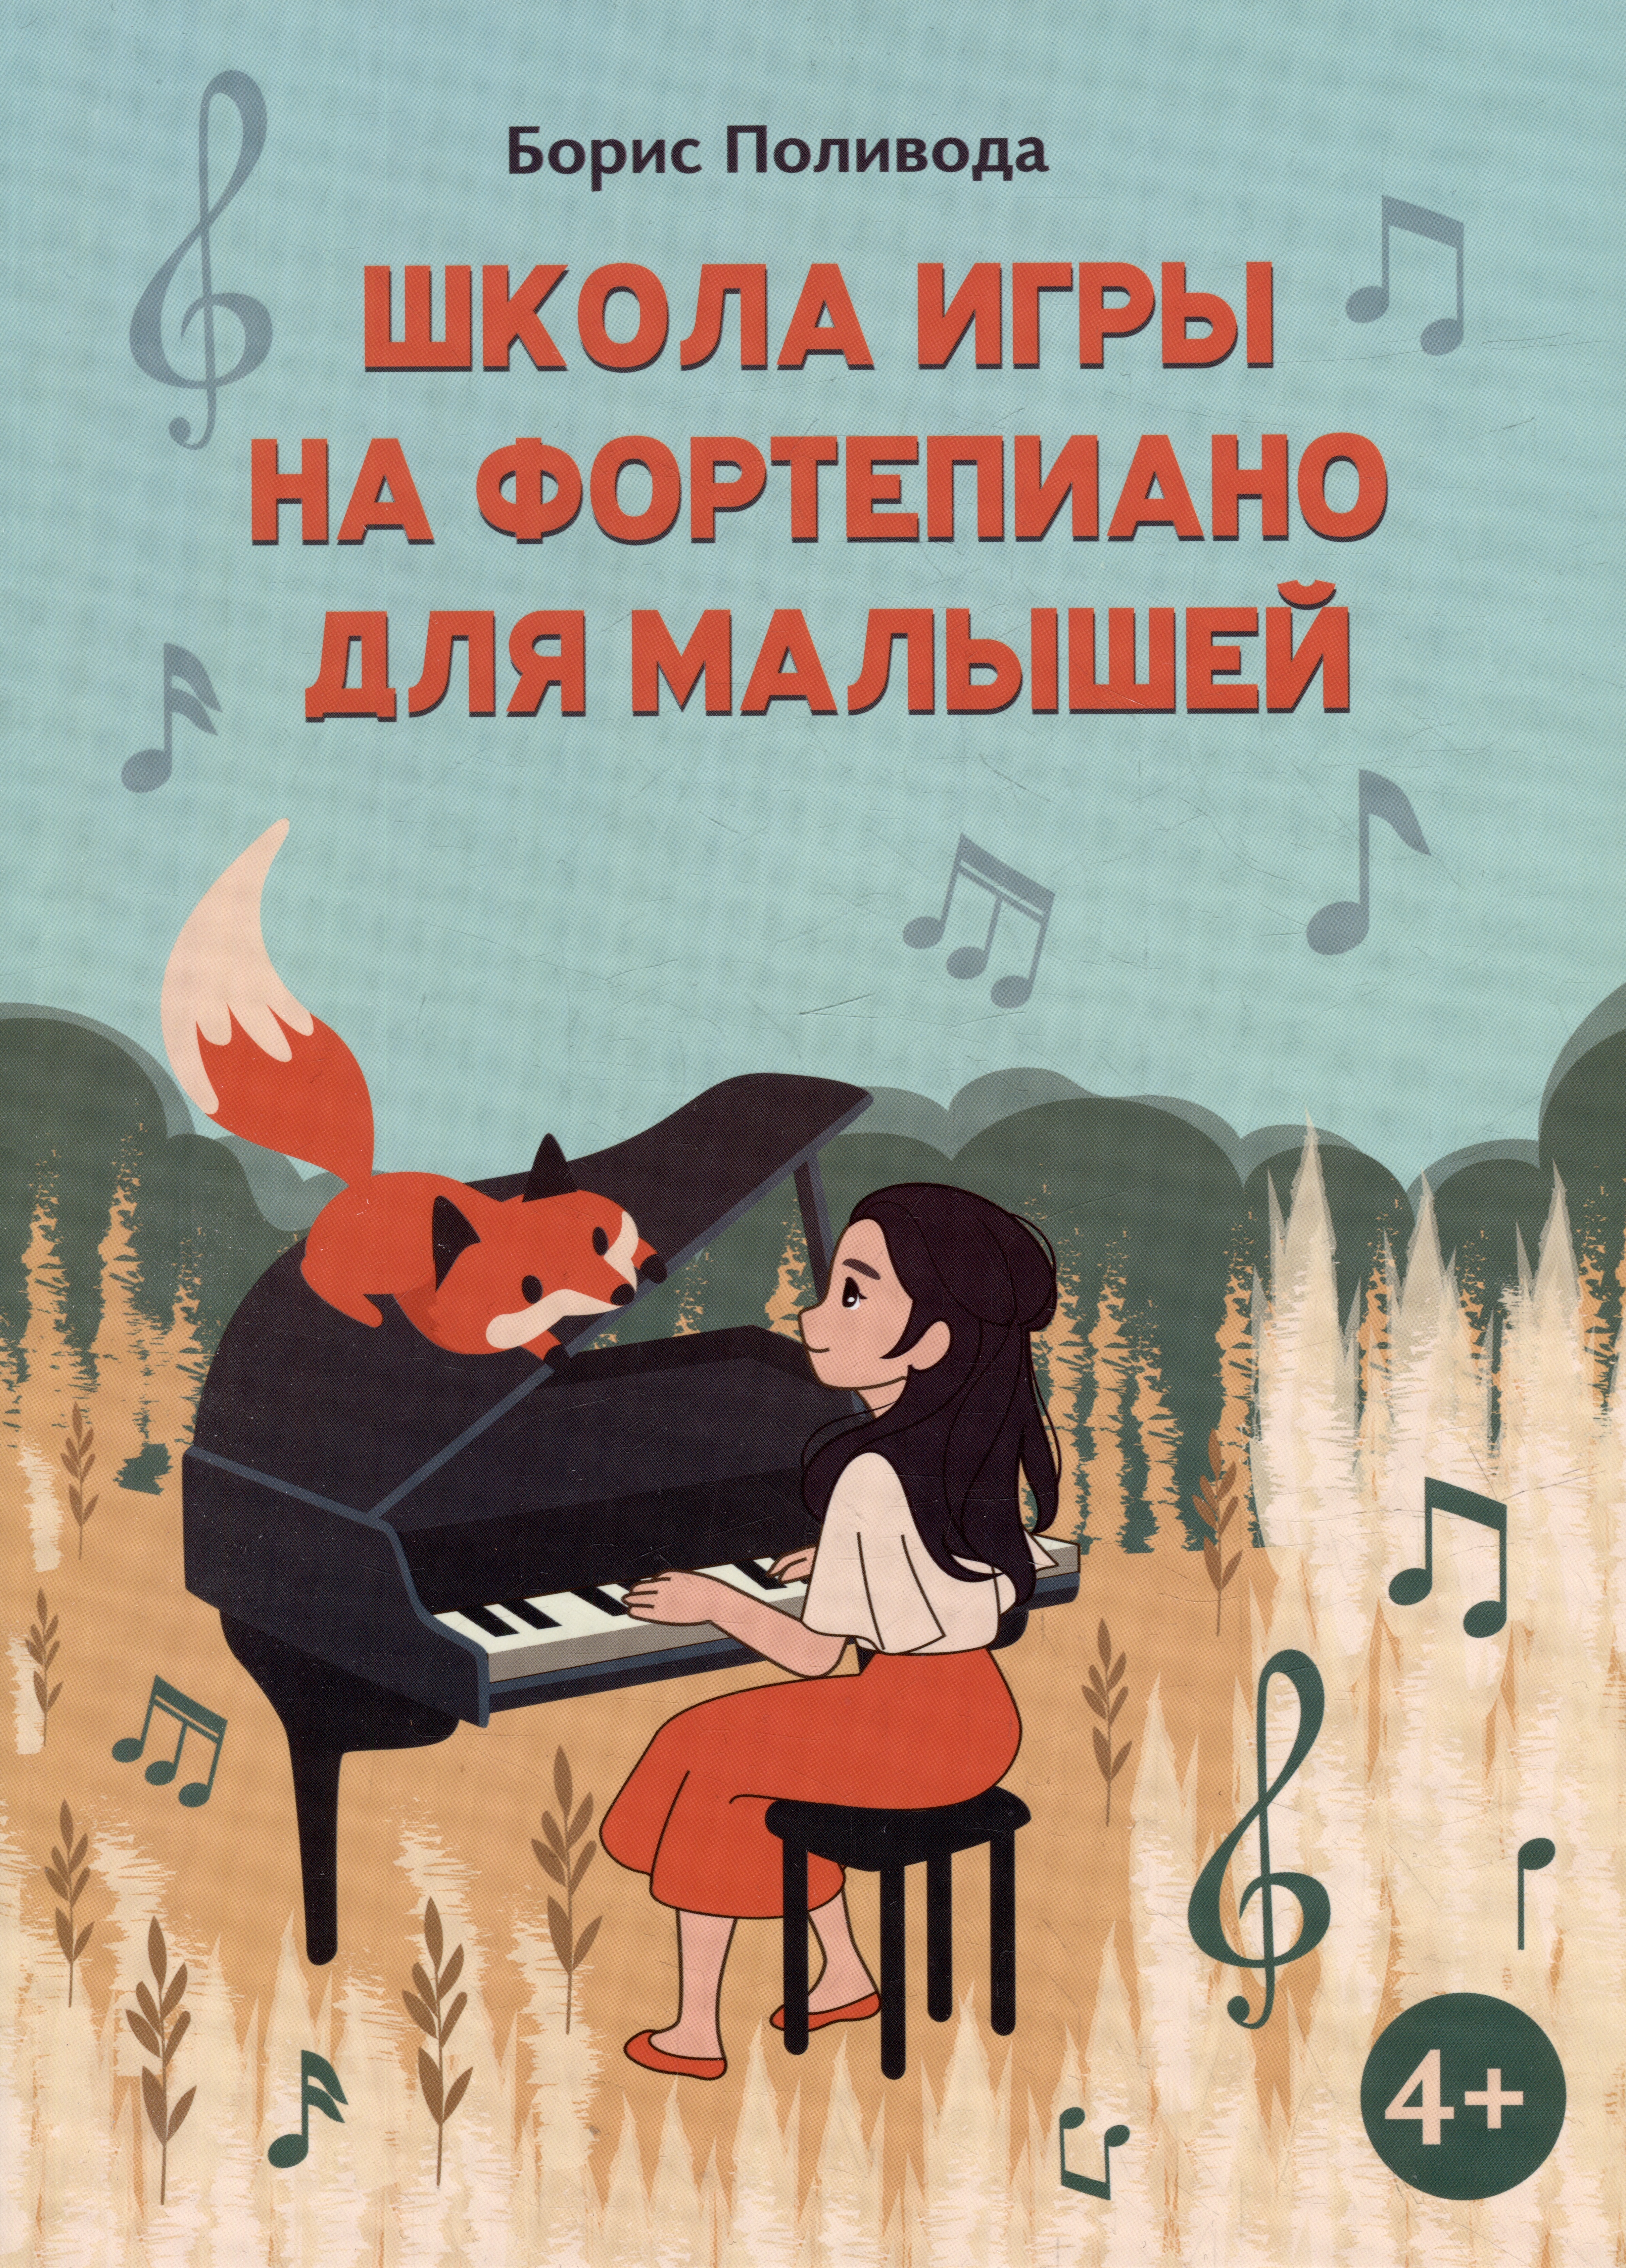 Поливода Борис Андреевич - Школа игры на фортепиано для малышей